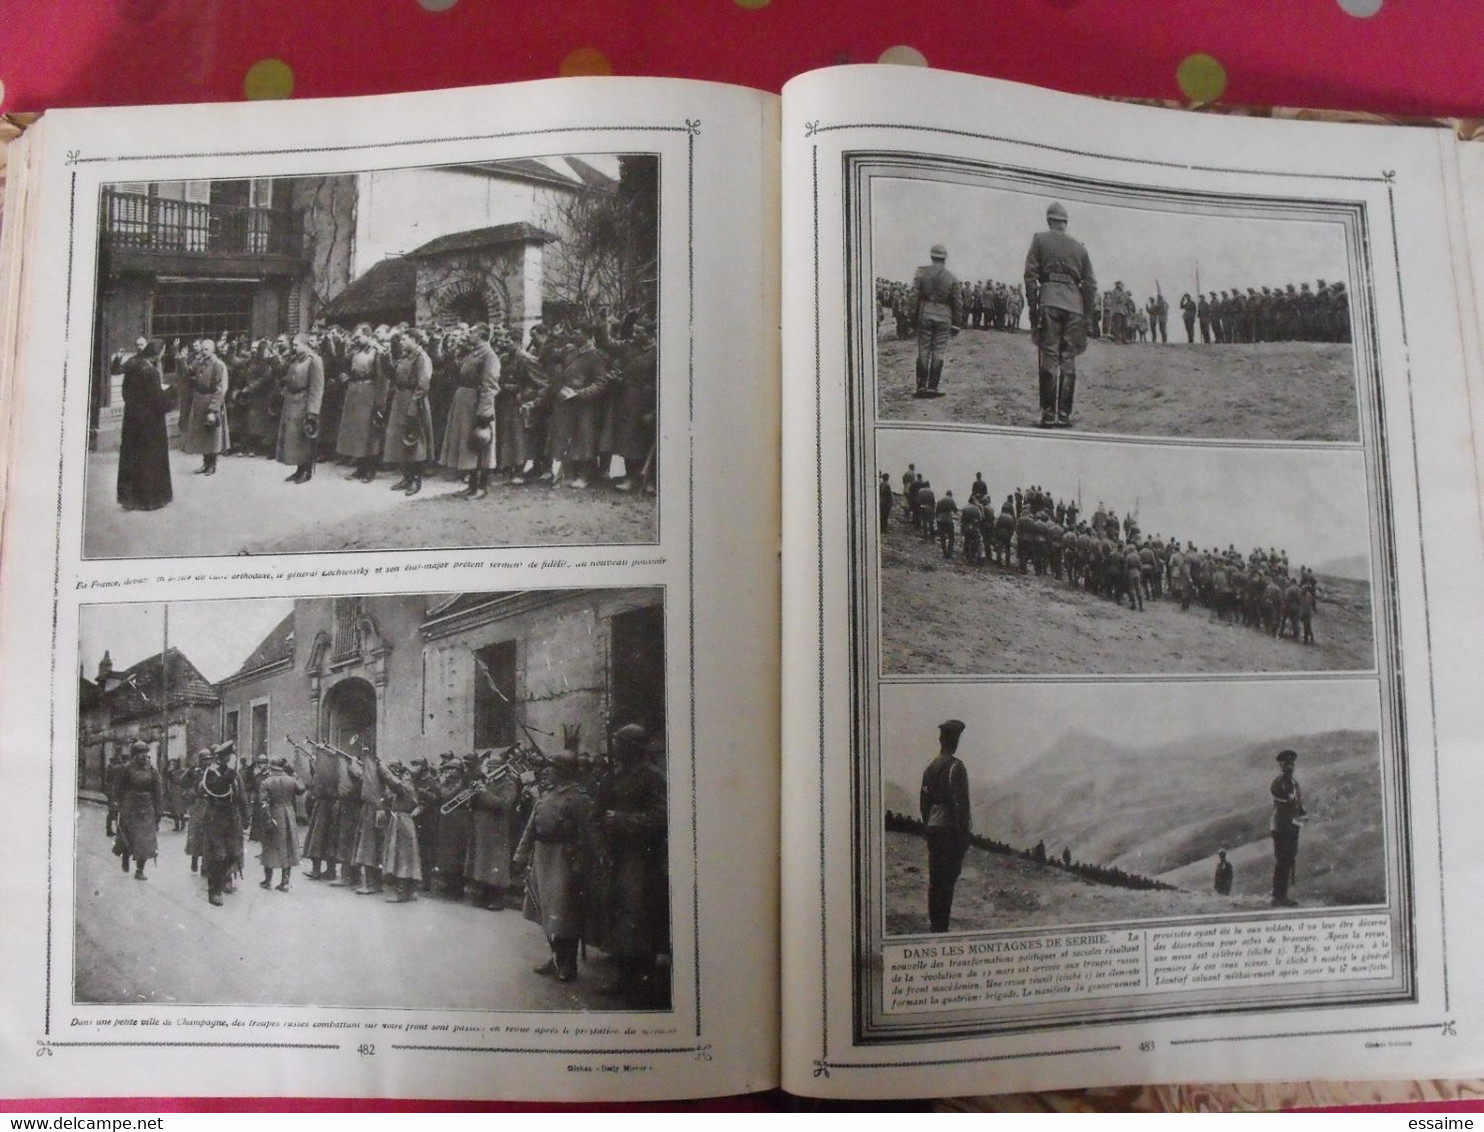 le panorama de la guerre. 1914-1917. tome V. Henri Levêque. Tallandier 1917. très illustré